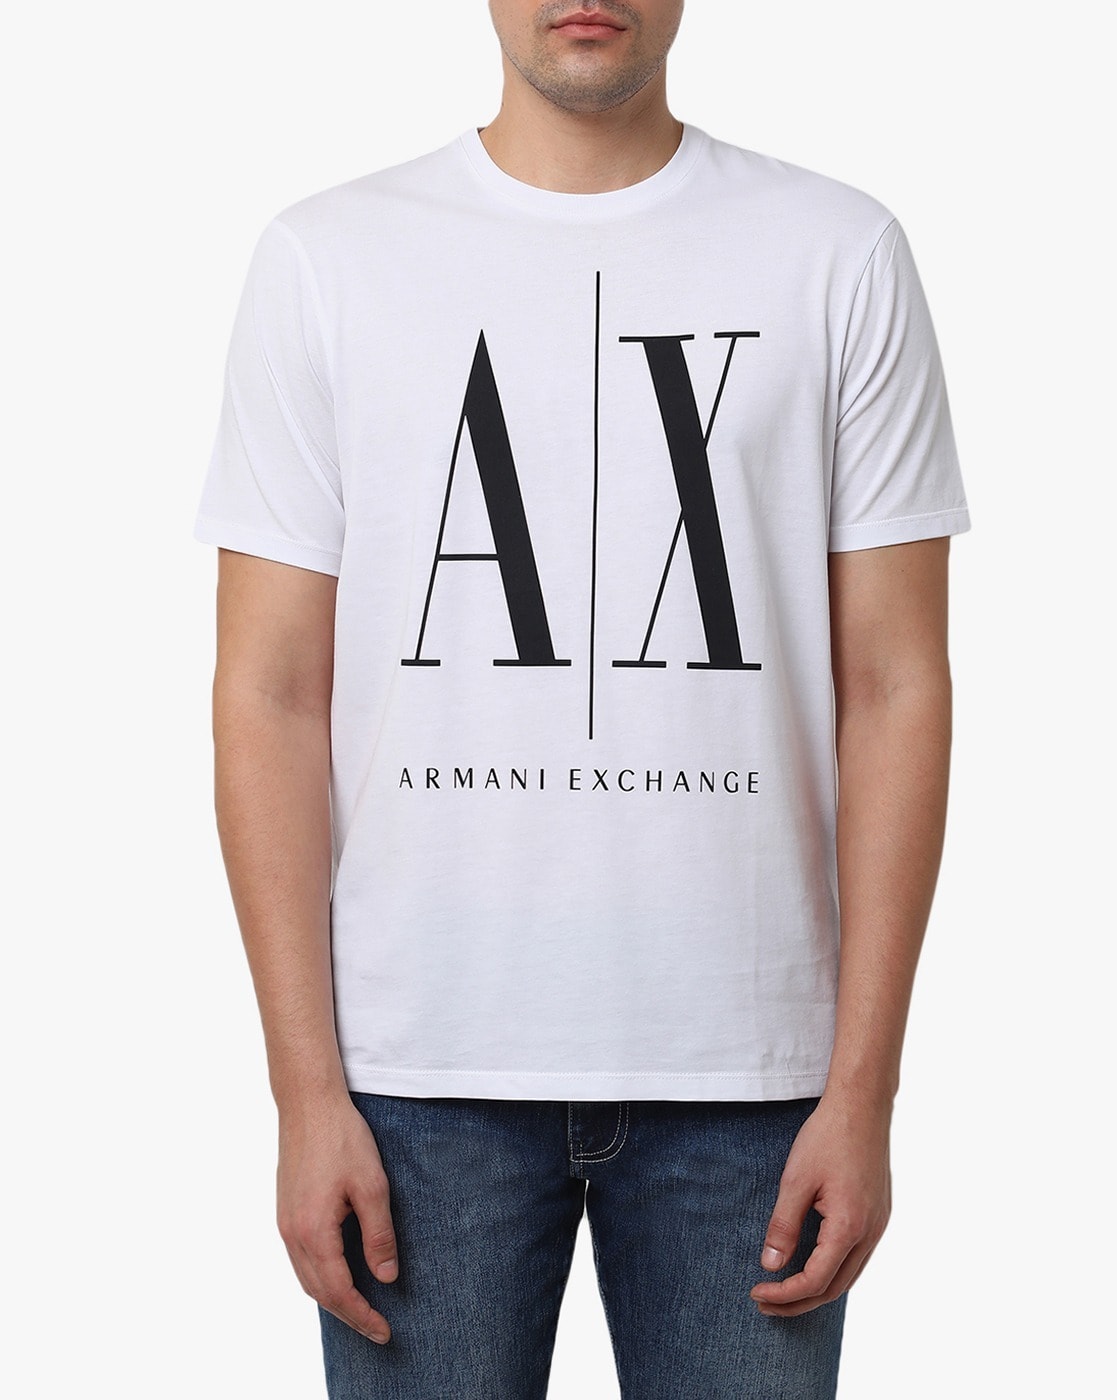 Tshirts for Men by ARMANI EXCHANGE Online | Ajio.com